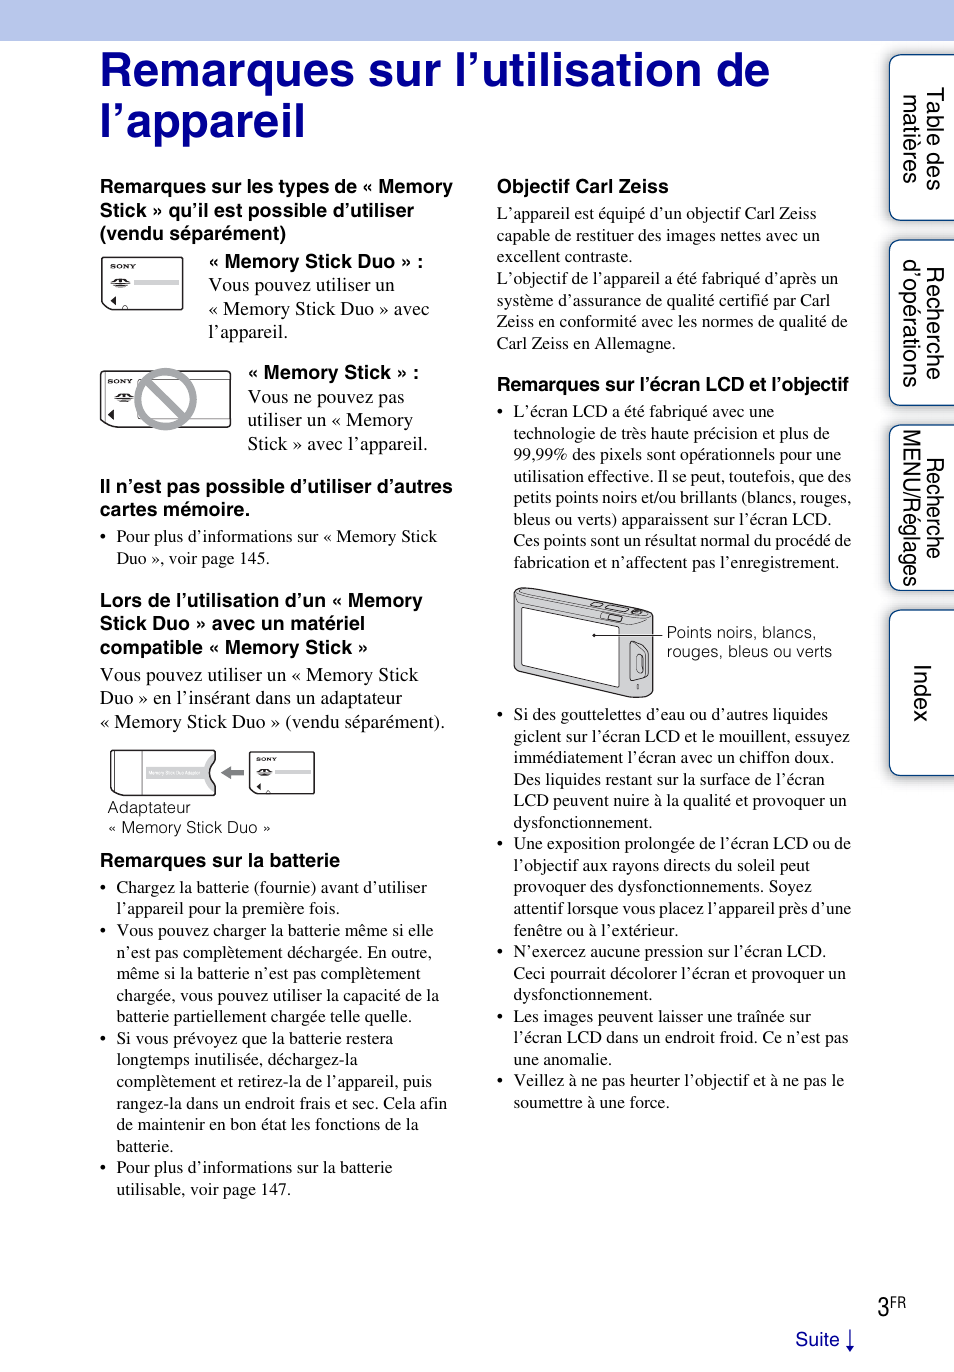 Remarques sur l’utilisation de l’appareil | Sony DSC-TX1 Manuel d'utilisation | Page 3 / 153